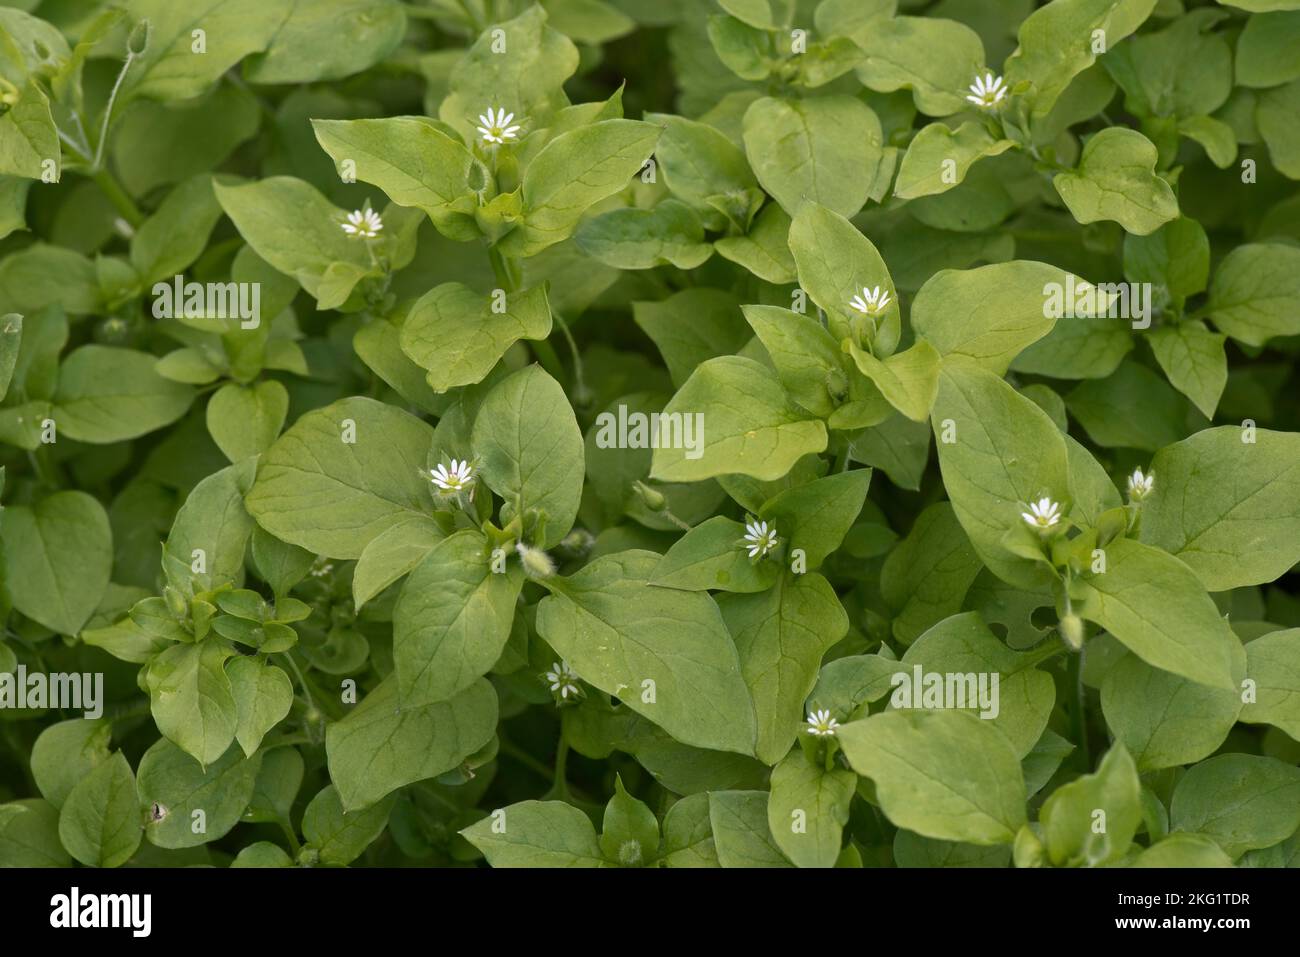 Plante herbeuse annuelle à fleurs de l'herbe commune (Stellaria media), avec de petites fleurs parmi les feuilles vertes, Berkshire, septembre Banque D'Images